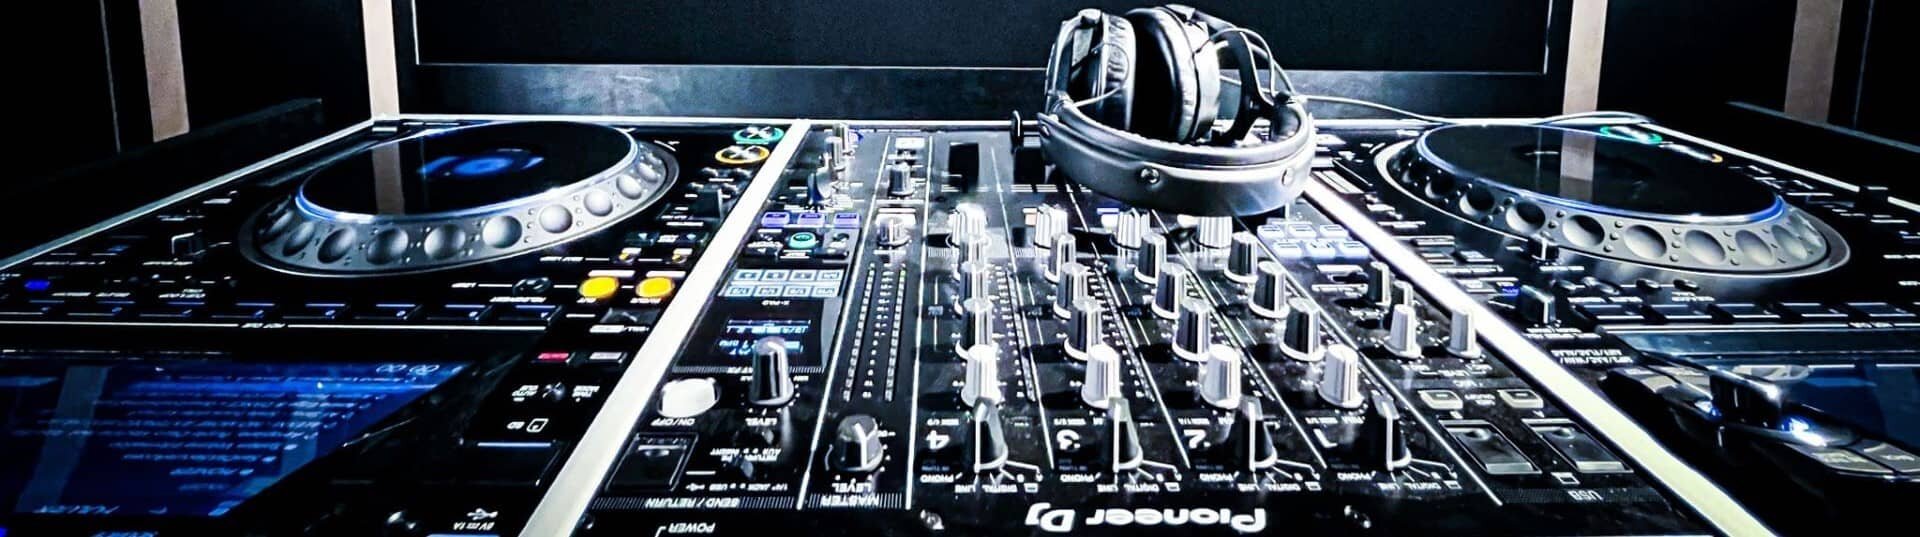 Table de mixage DJM-900NX2, lecteurs CDJ-3000 dans studio DJ avec casque. | © Plug The Jack